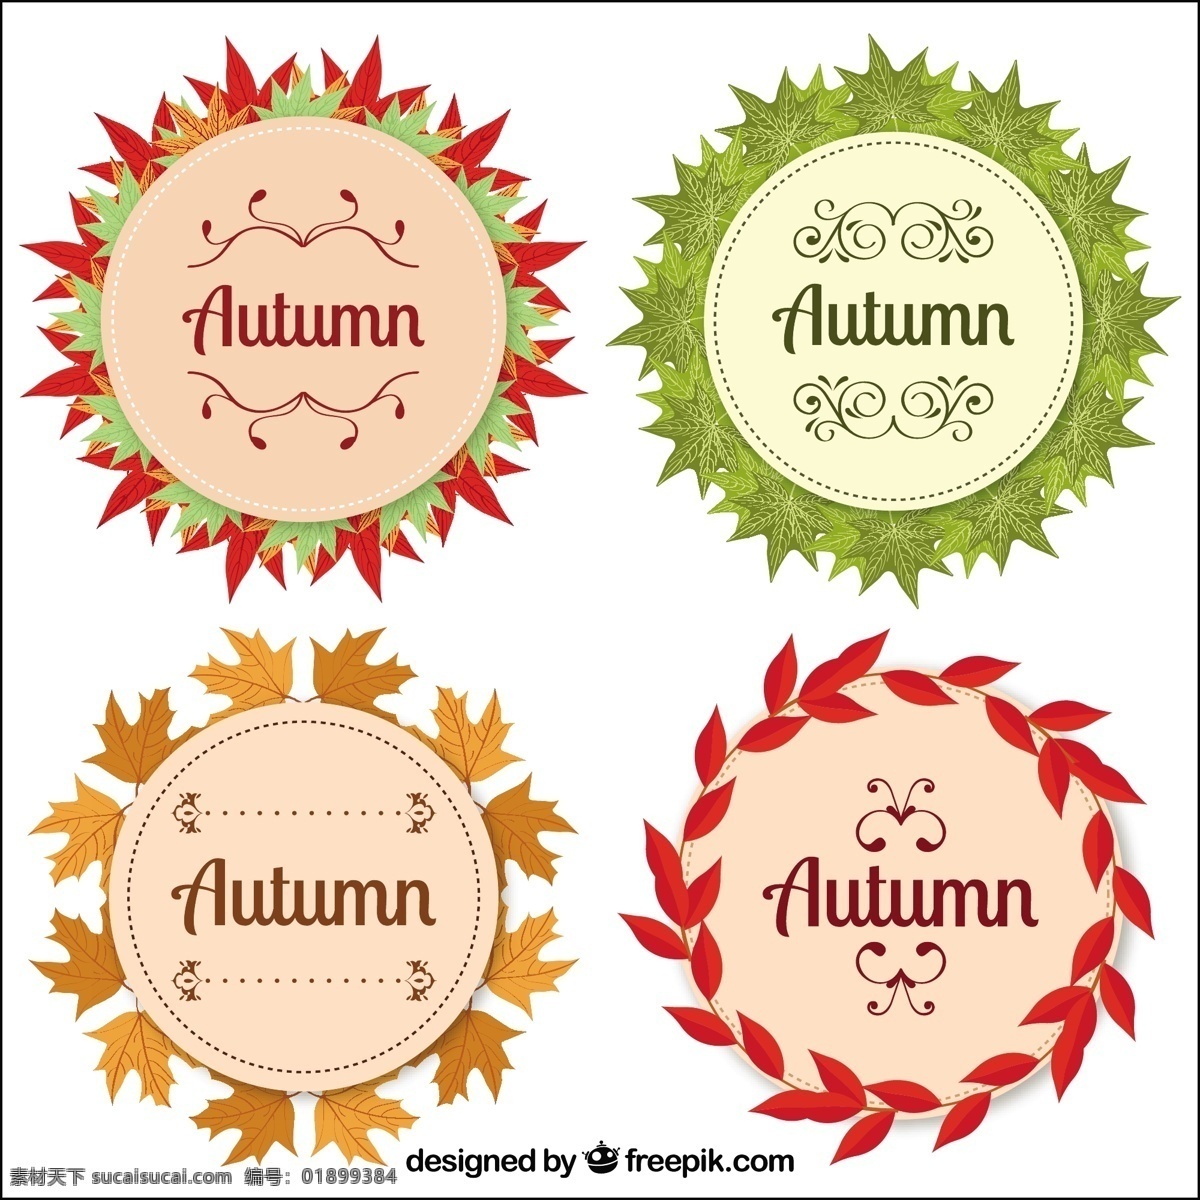 秋天 徽章 圆形 风格 现代 集 叶 自然 邮票 可爱 树叶 彩色 平面 秋季 圆 平面设计 会徽 象征 冷静 分行